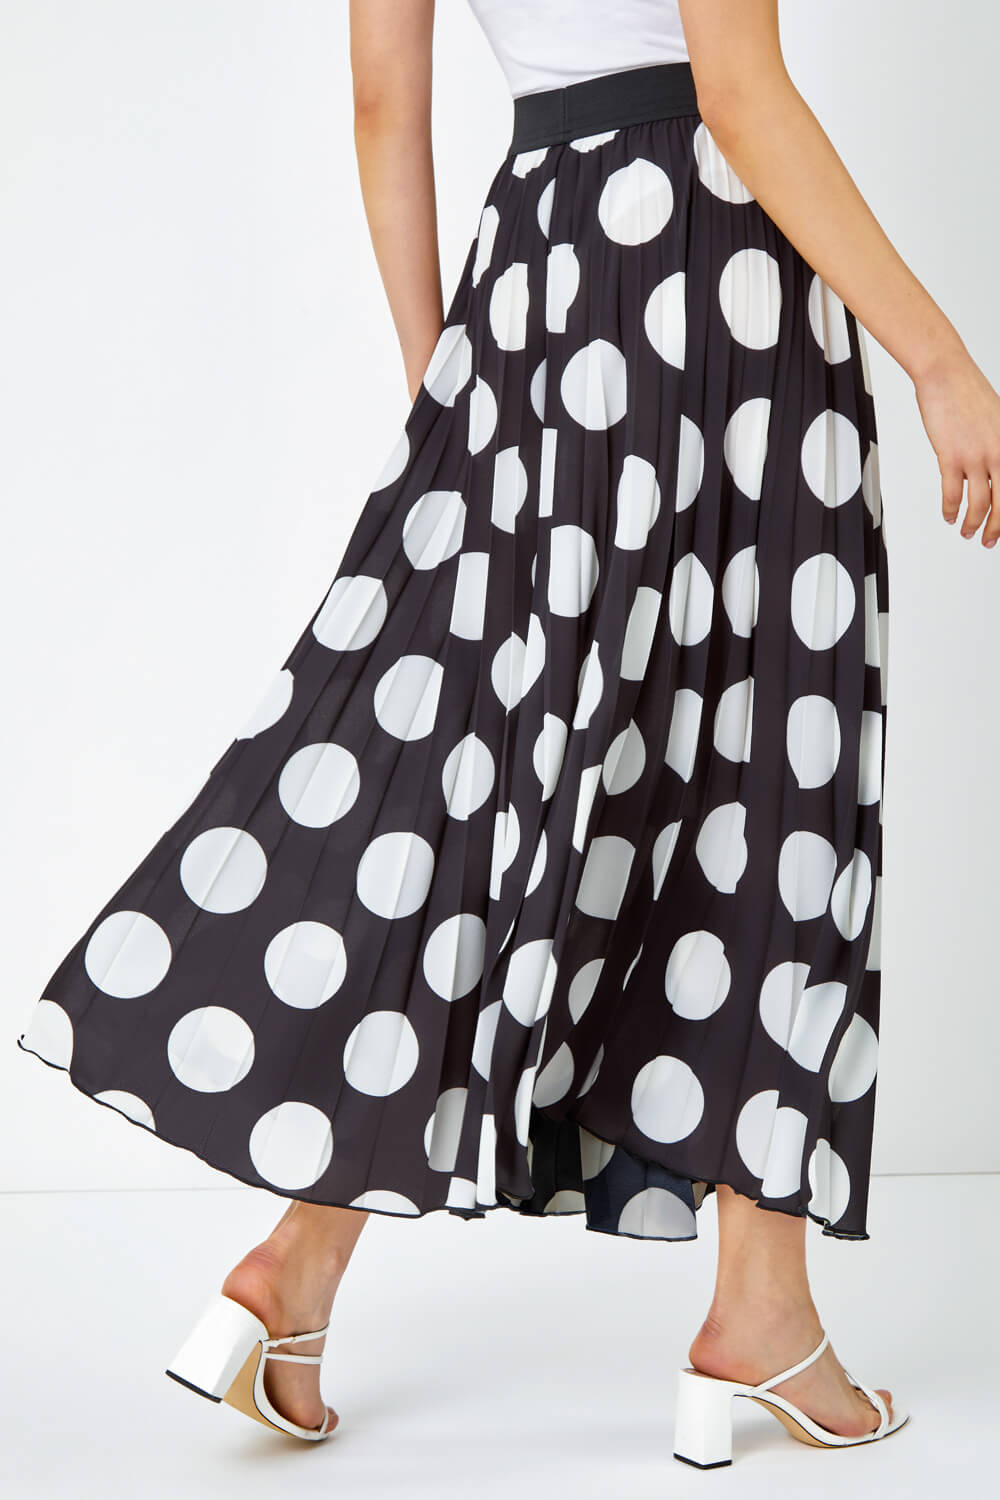 Black Polka Dot Pleated Midi Skirt, Image 3 of 5